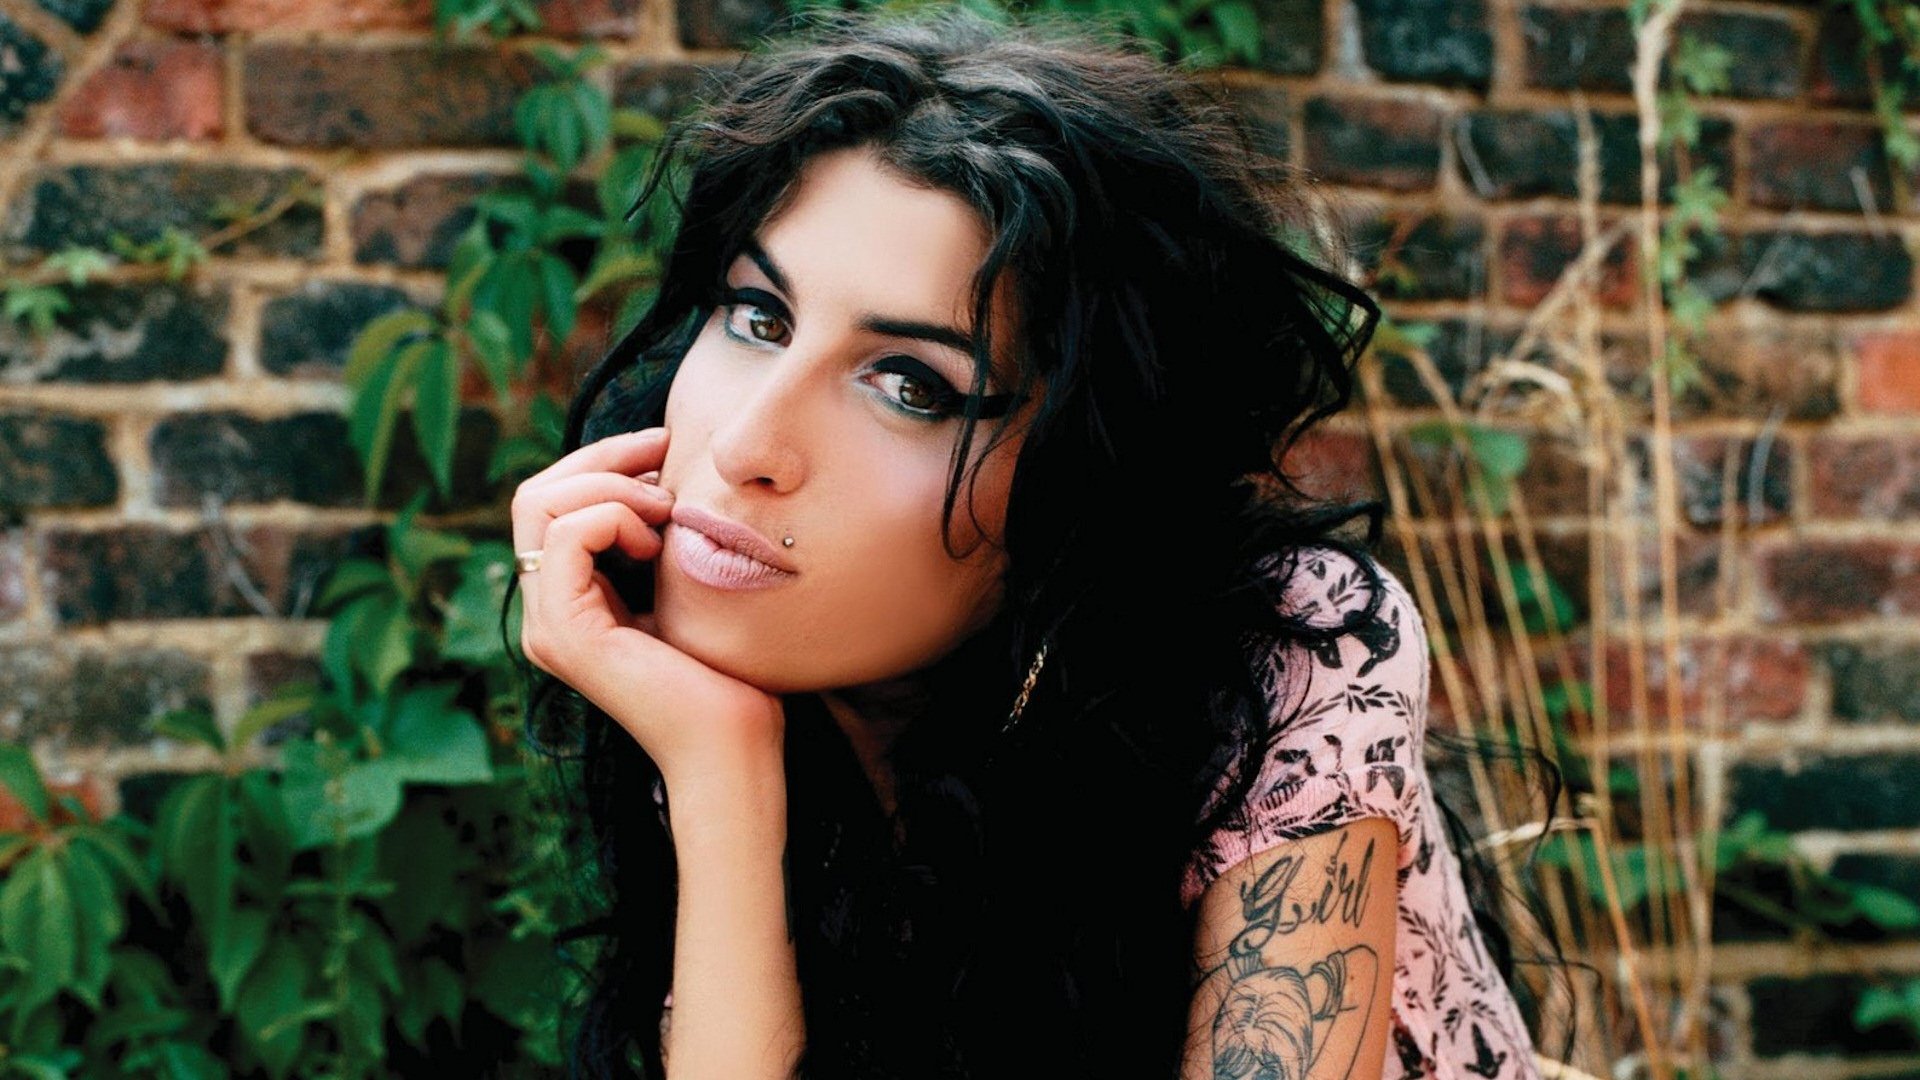 Padres de Amy Winehouse Reciben Premio BRIT por su "Increíble Talento"